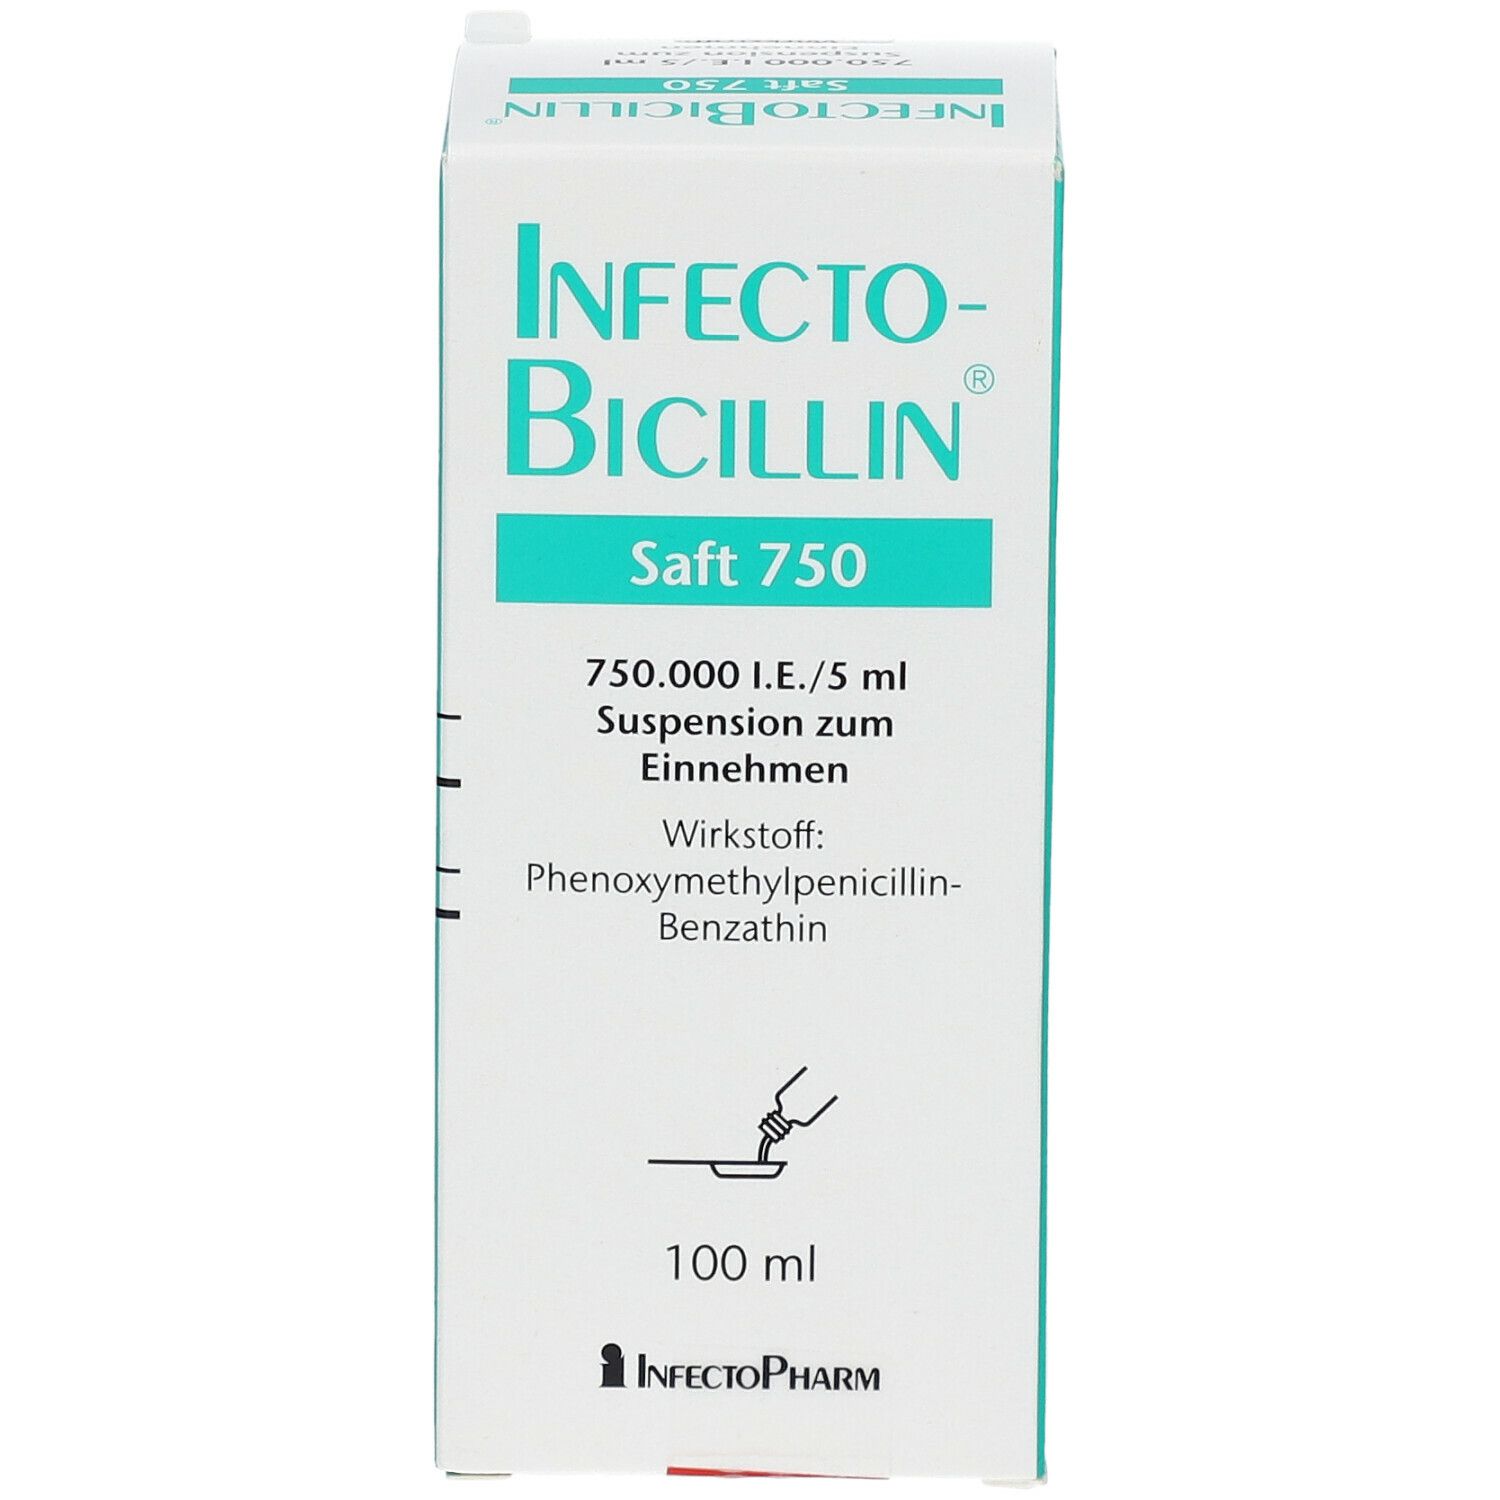 InfectoBicillin® Saft 750